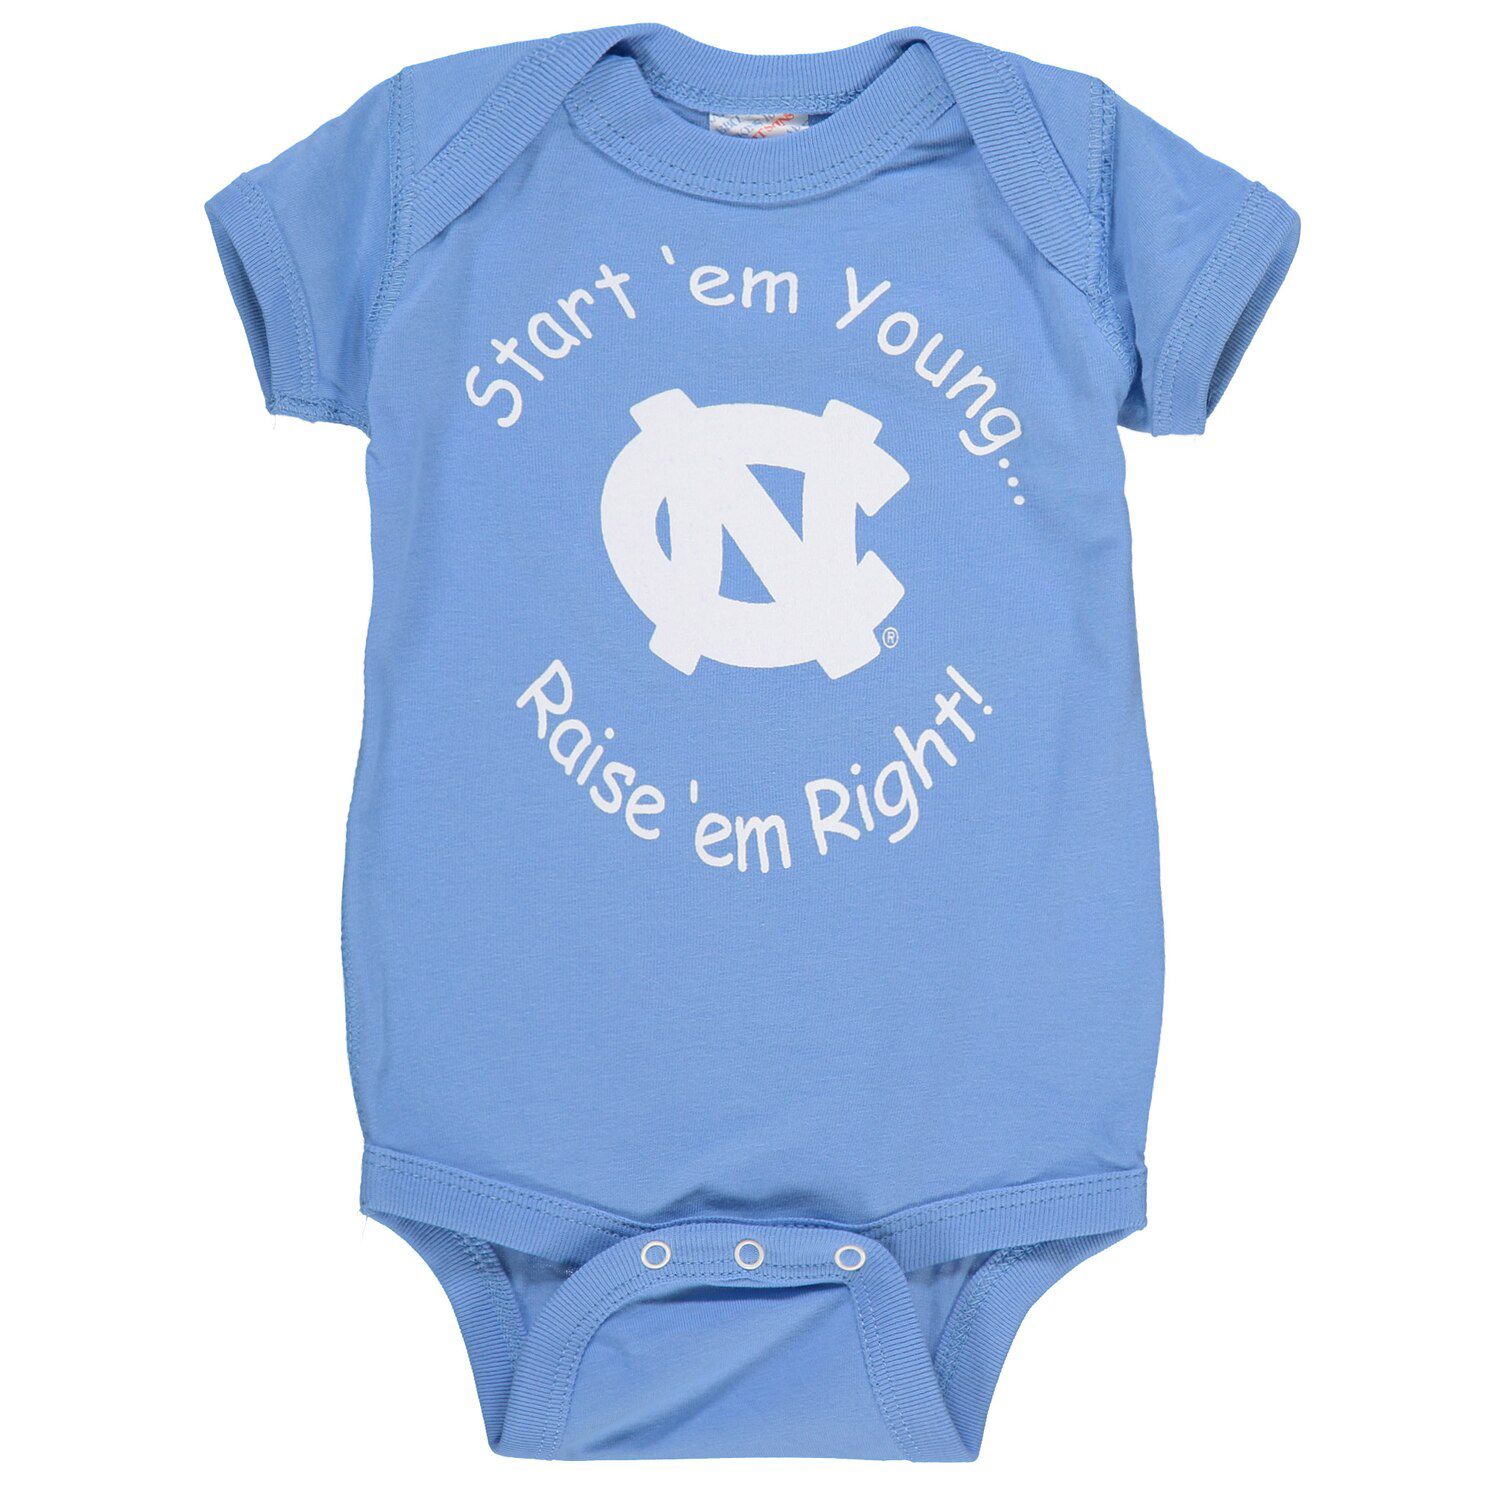 Image for Unbranded Newborn & Infant Carolina Blue North Carolina Tar Heels Start 'Em Young Bodysuit at Kohl's.